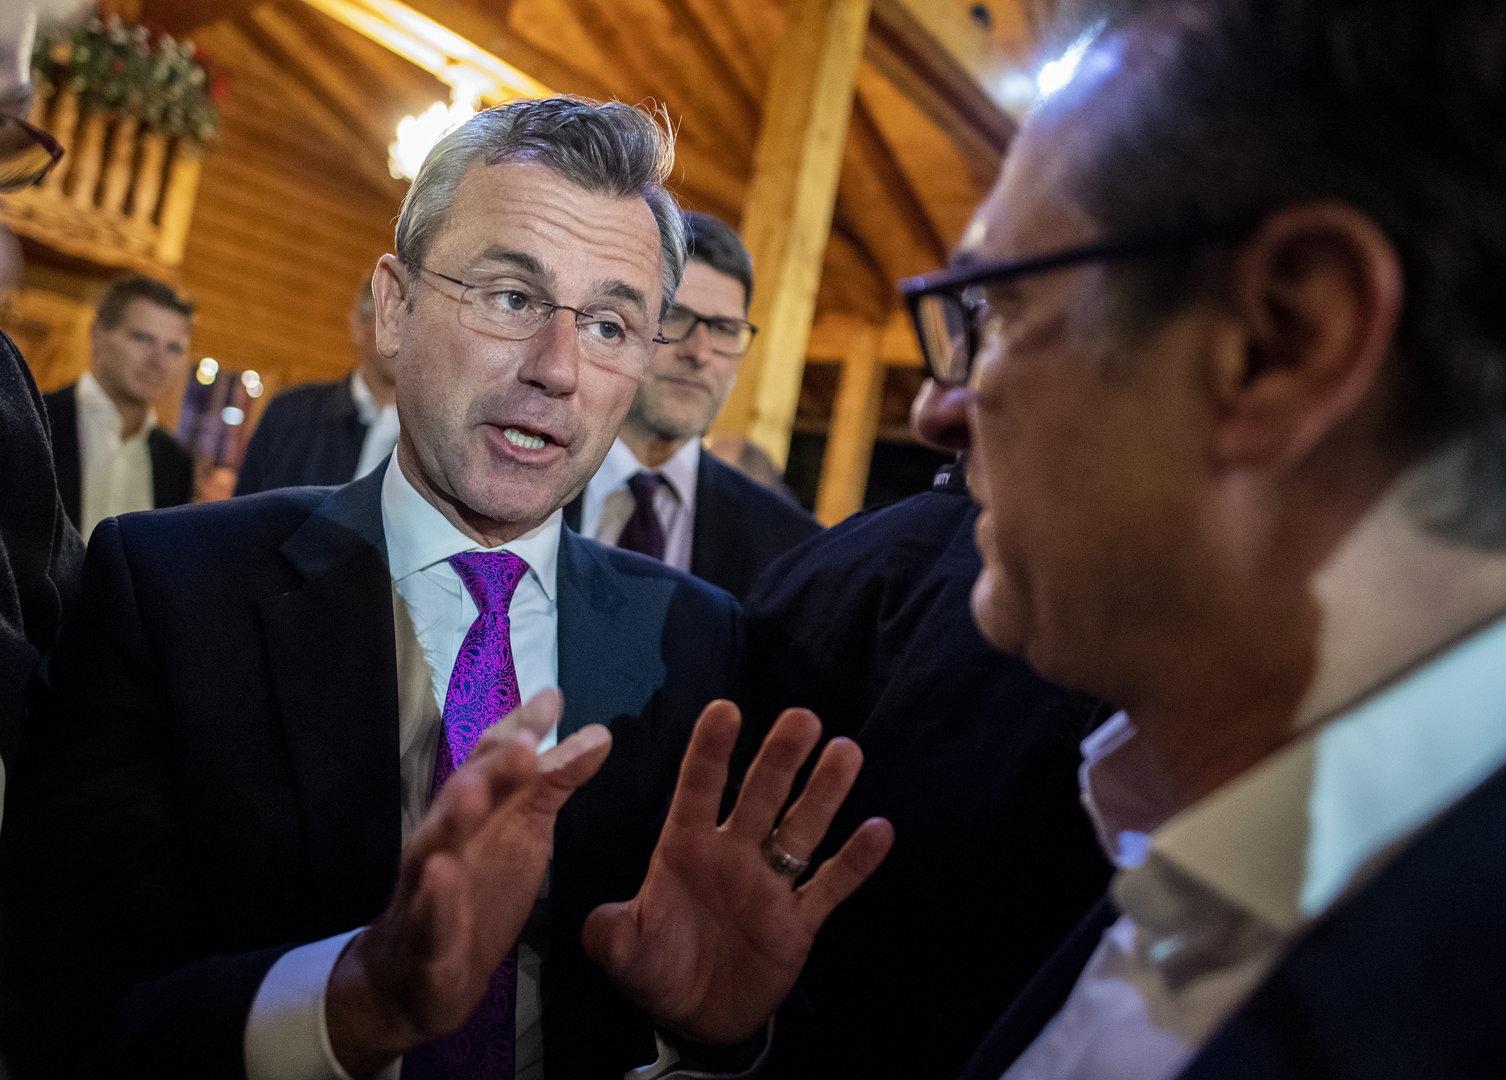 Streit eskaliert: Spaltet Strache-Frage die FPÖ?